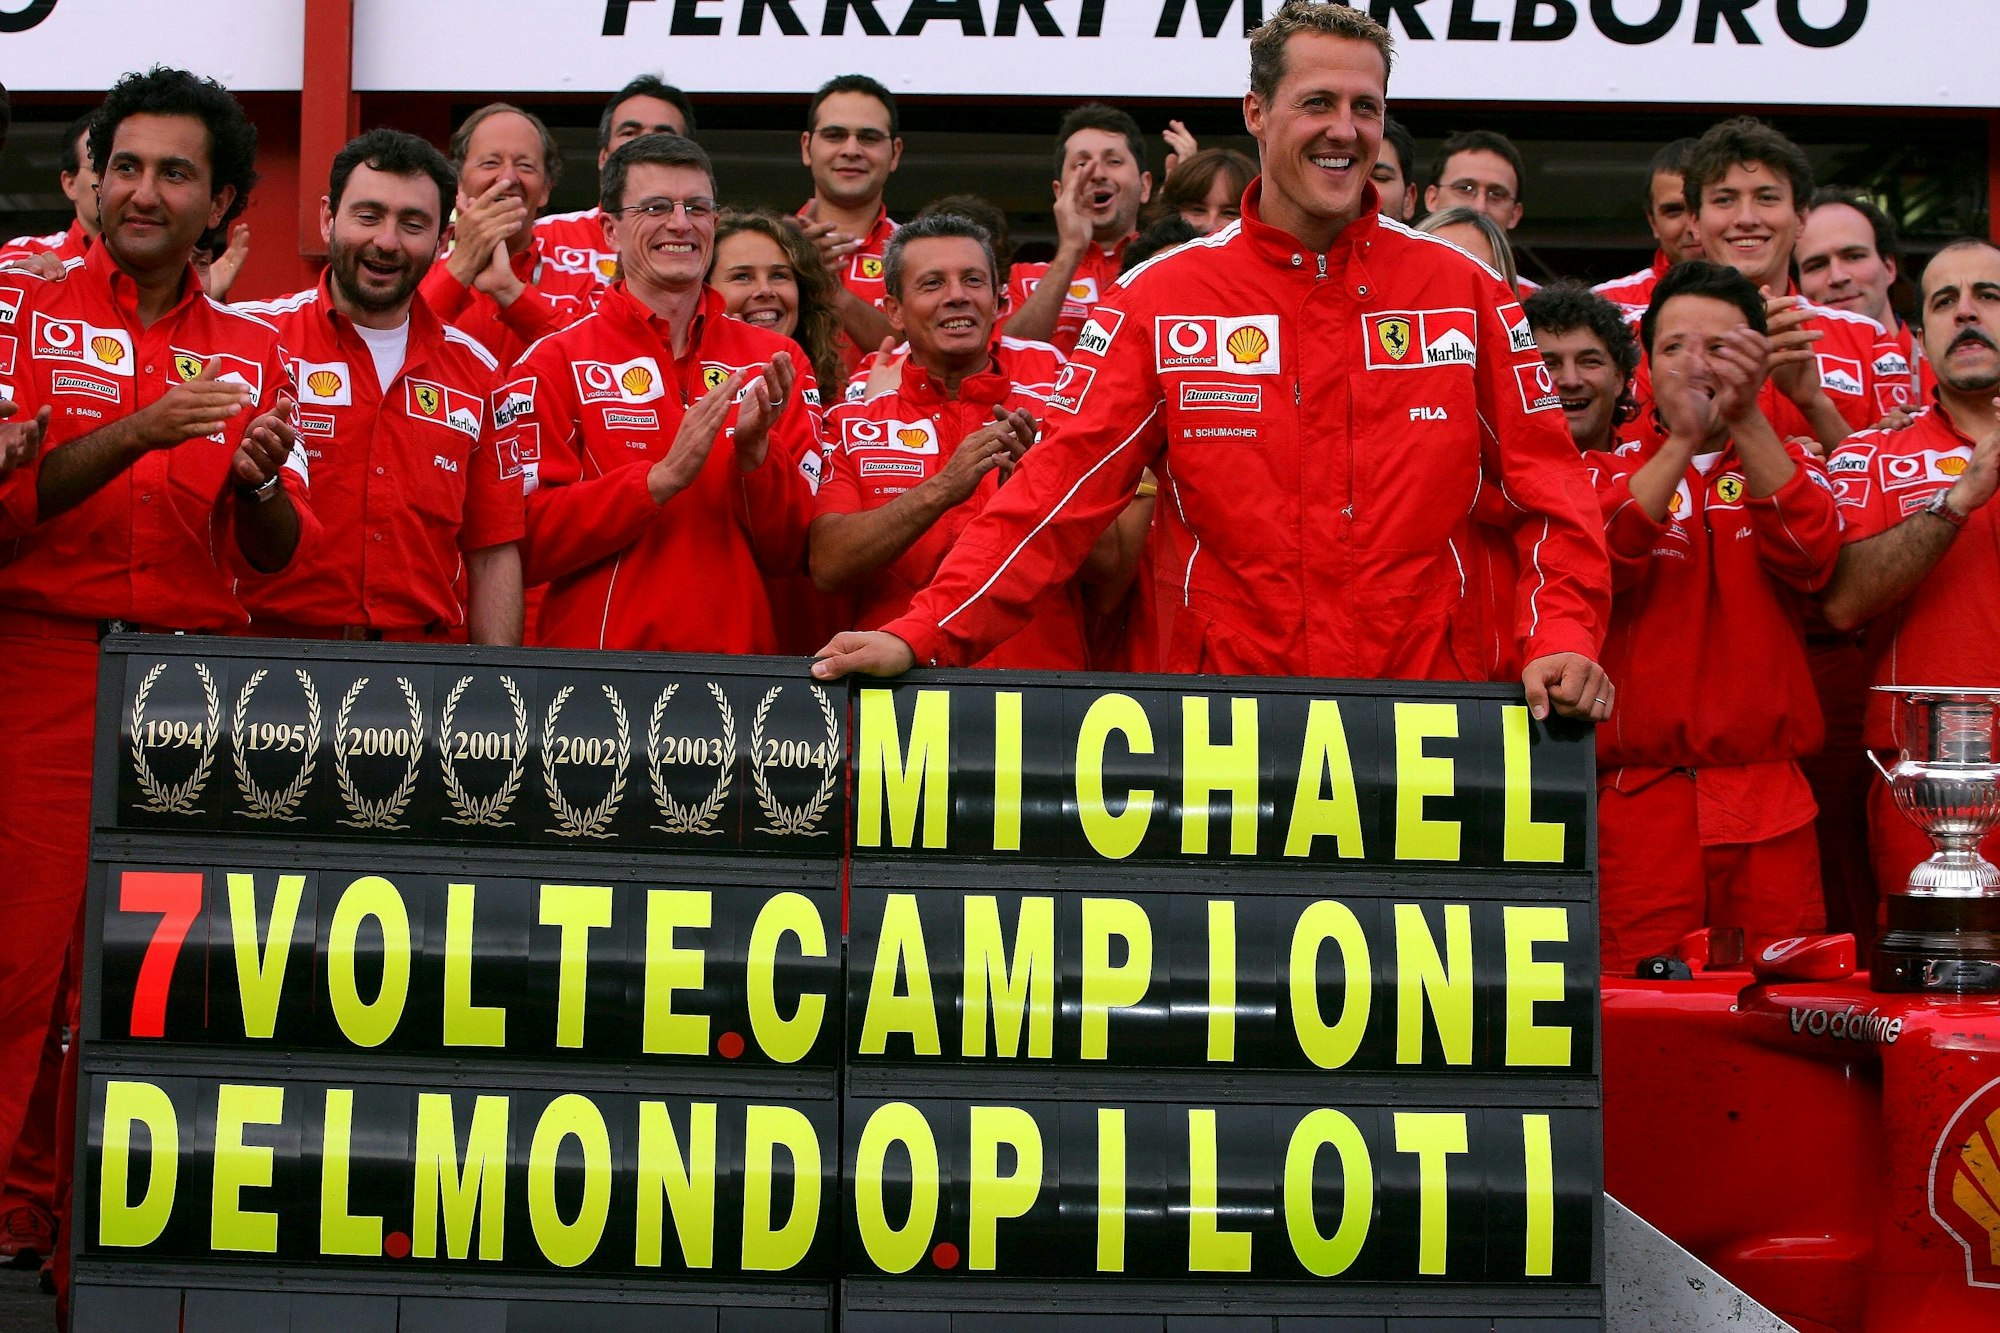 Michael Schumacher feiert seine siebte Weltmeisterschaft mit dem Team von Ferrari.